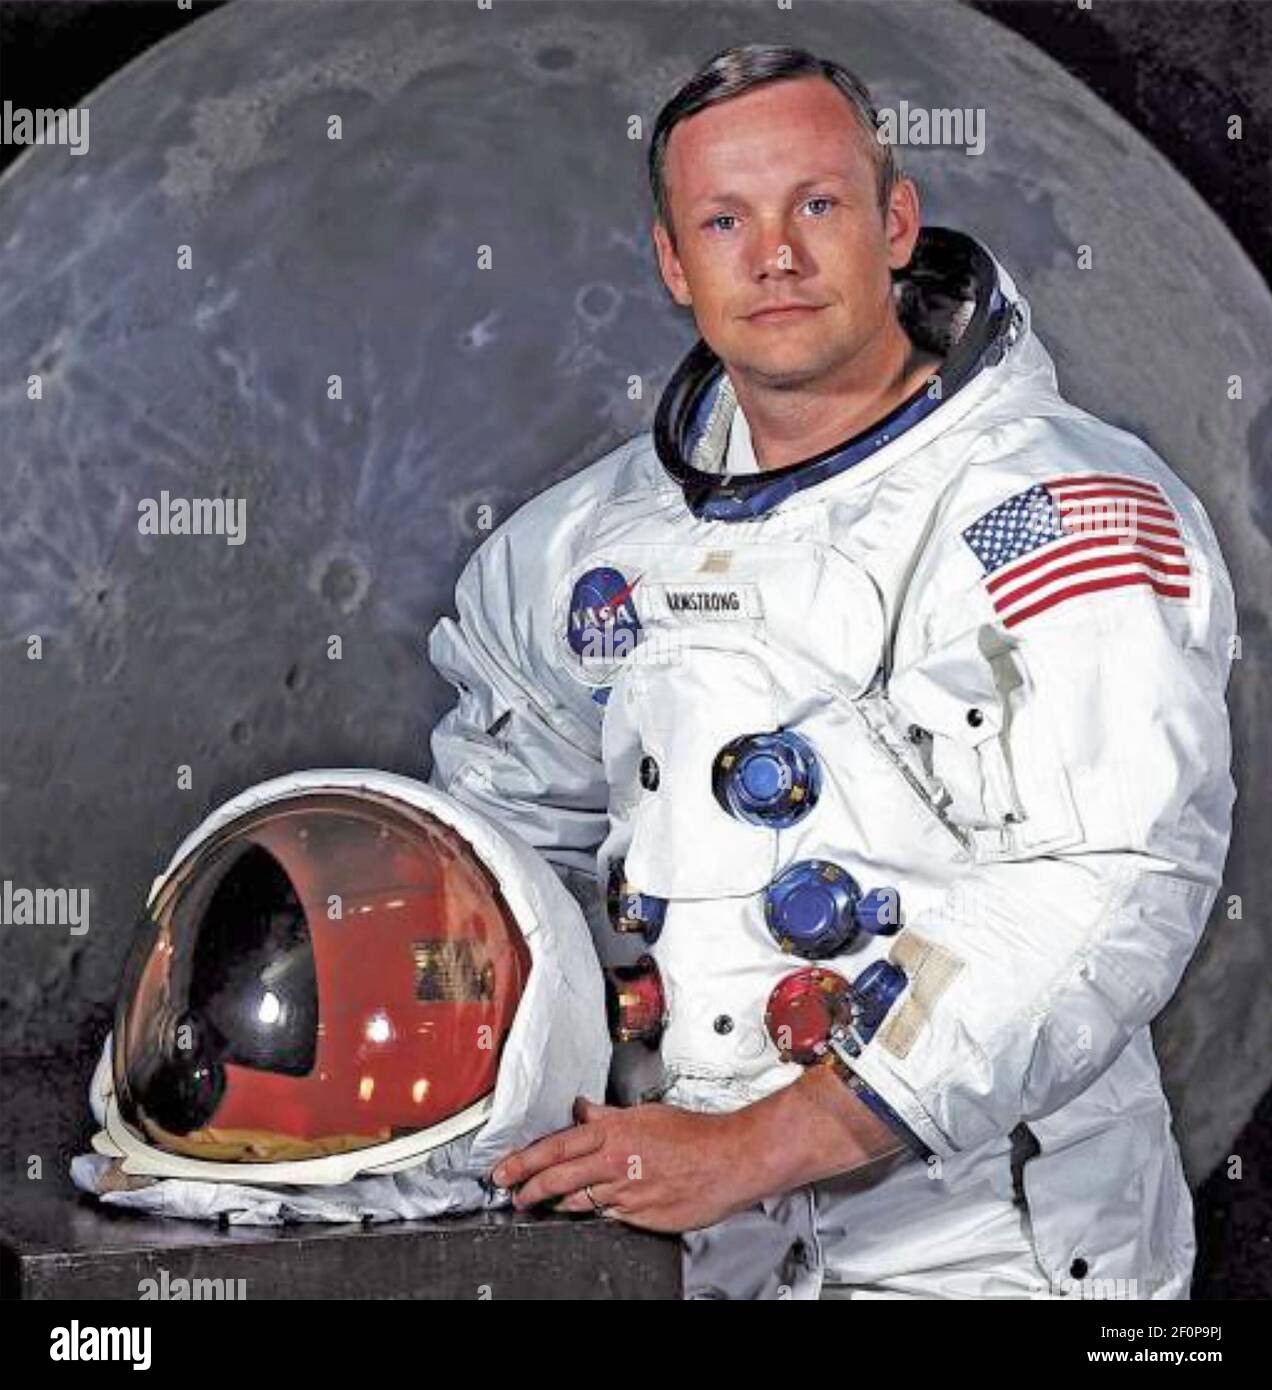 NEIL ARMSTRONG (1930-2012) Ingénieur aéronautique américain, pilote d'essai et premier homme à mettre le pied sur la lune 0n 20 juillet 1969. Photo officielle de la NASA prise en avril 1969. Banque D'Images